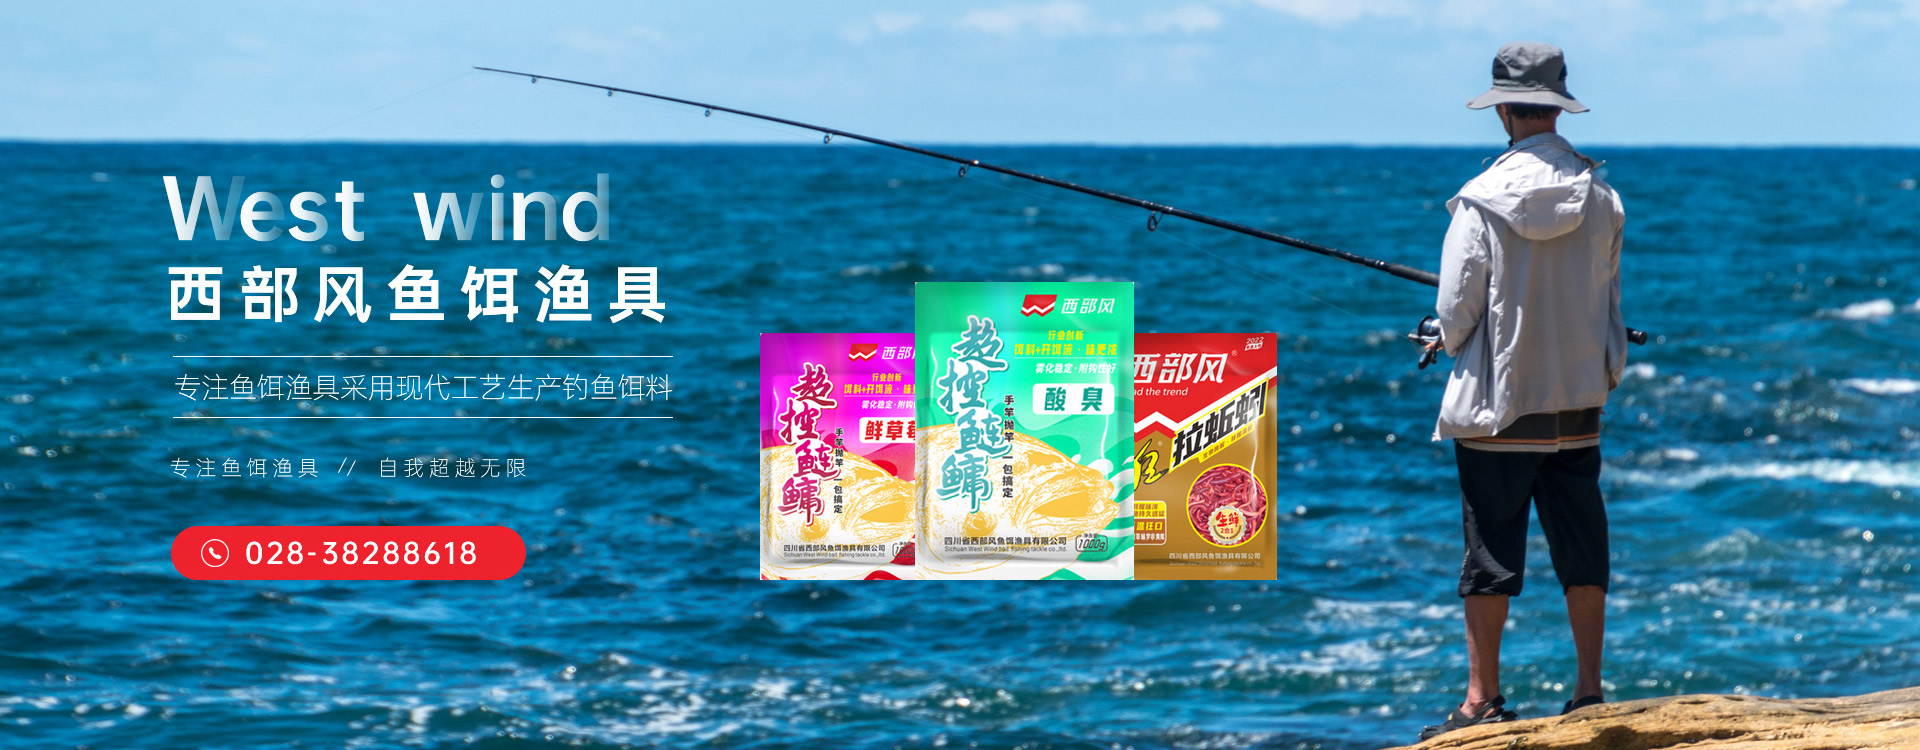 四川省西部風魚餌漁具有限公司